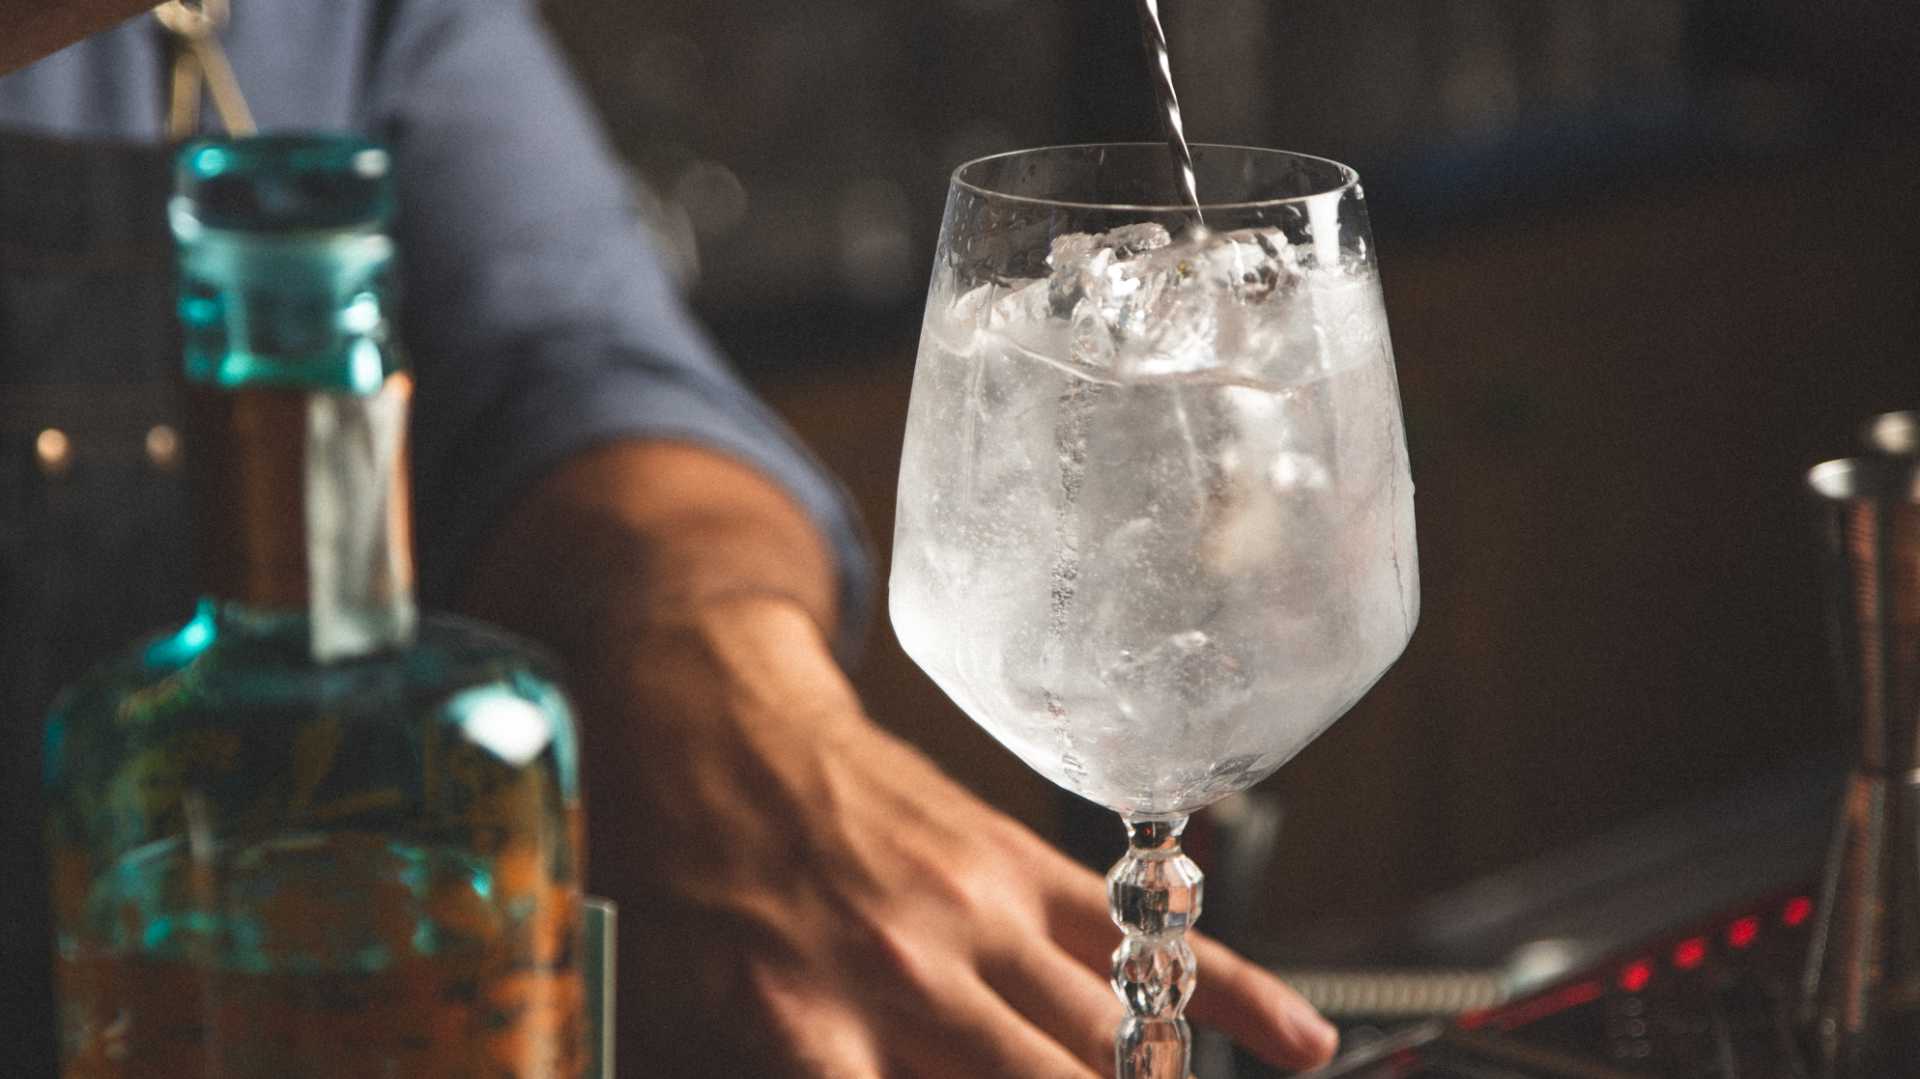 Immagine rappresentativa di un cocktail al gin